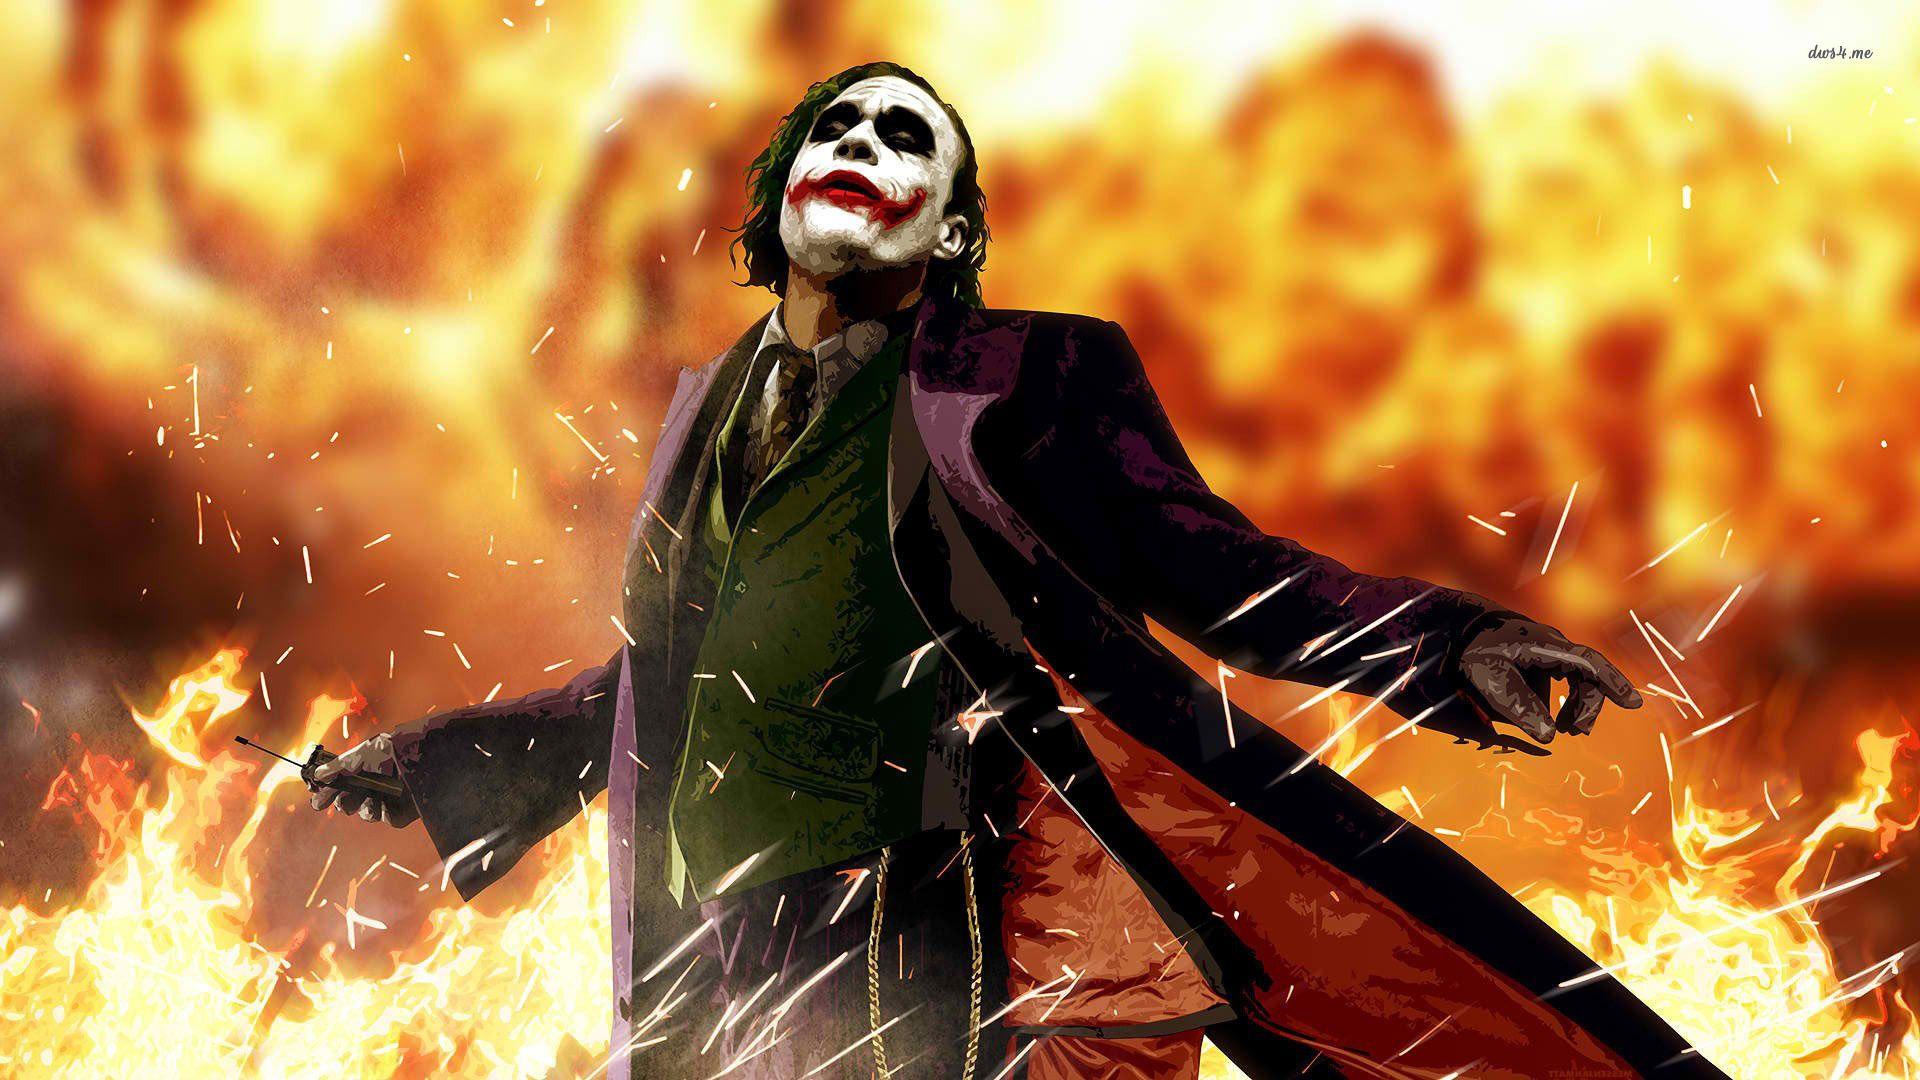 Joker The Dark Knight HD Wallpaper